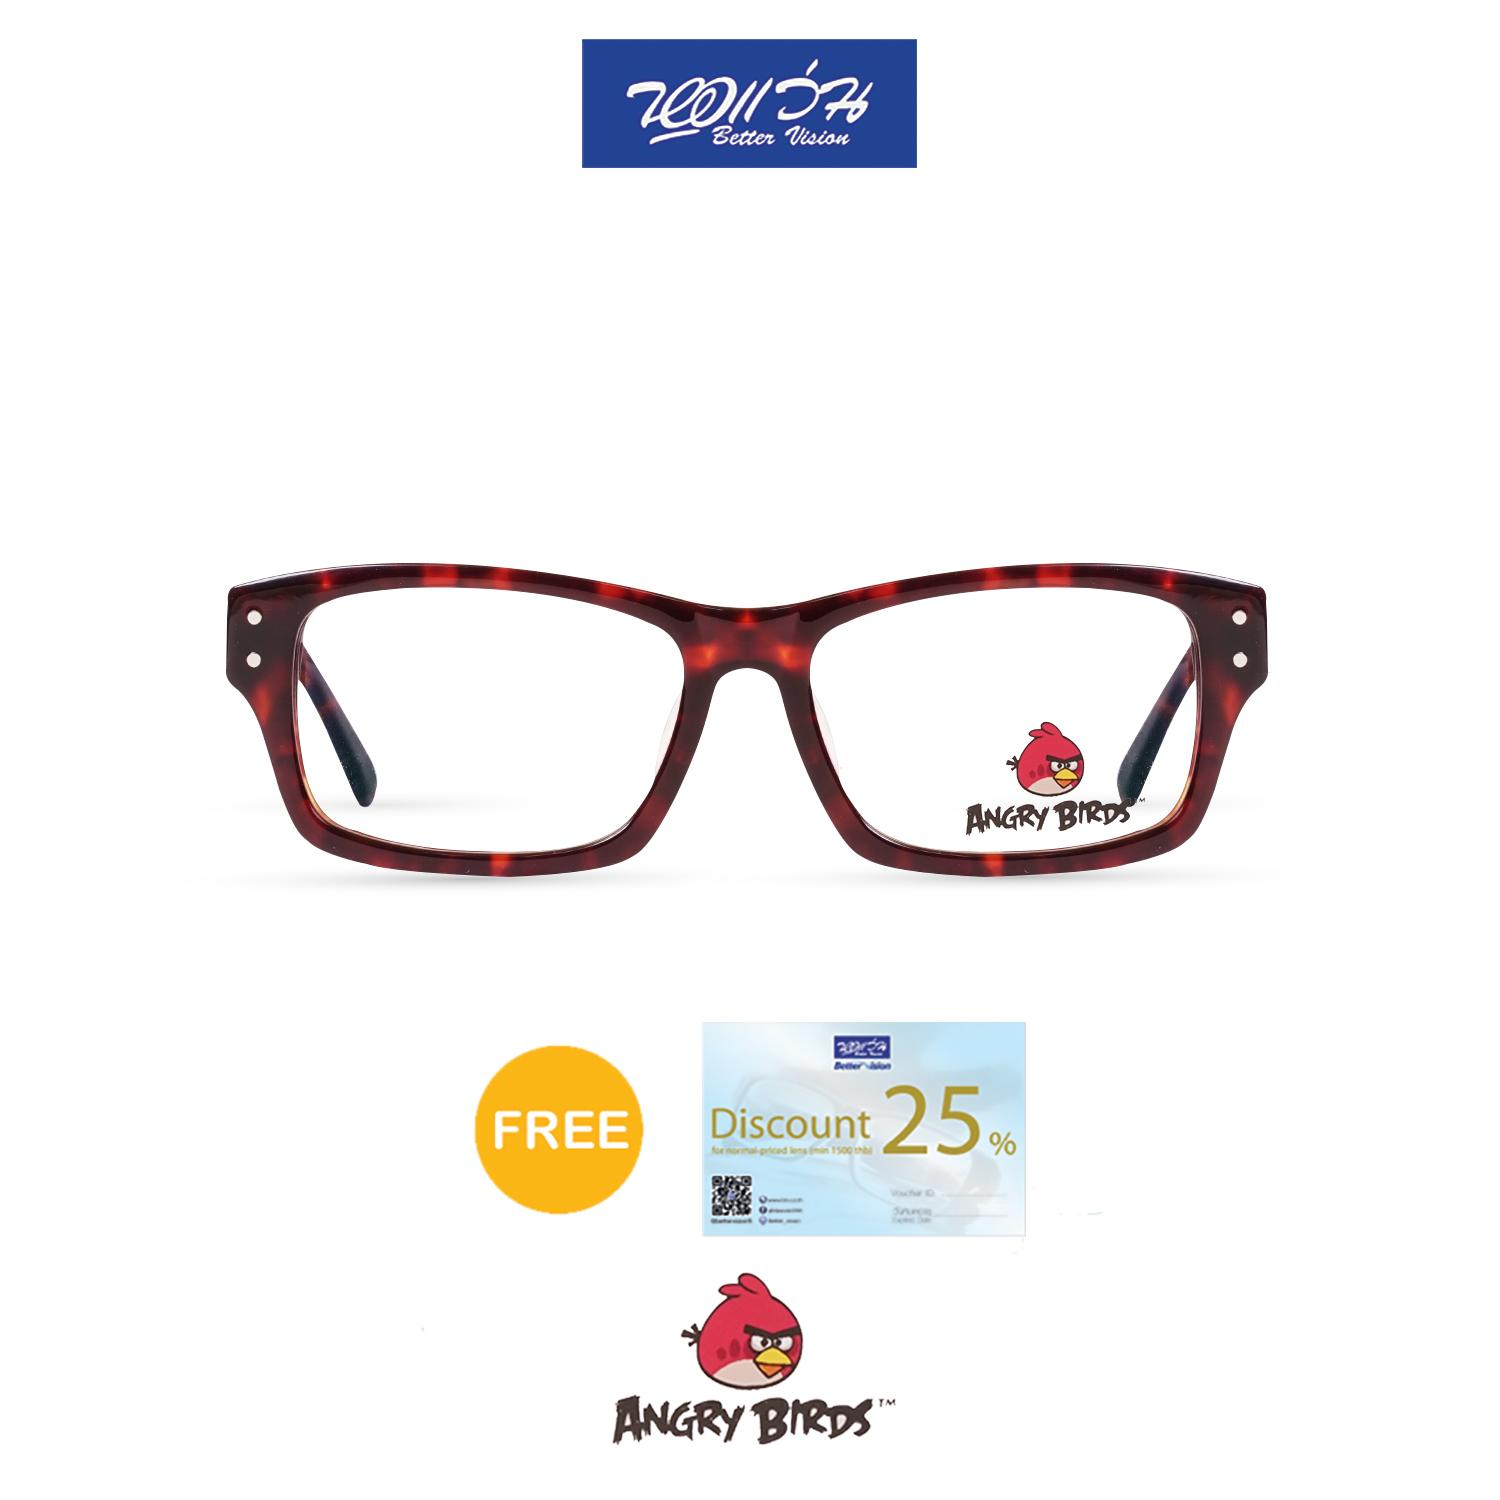 กรอบแว่นตาเด็ก แองกี้ เบิร์ด ANGRY BIRDS Child glasses แถมฟรีส่วนลดค่าตัดเลนส์ 25%  free 25% lens discount รุ่น FAG12101 สี RED TORTOISE